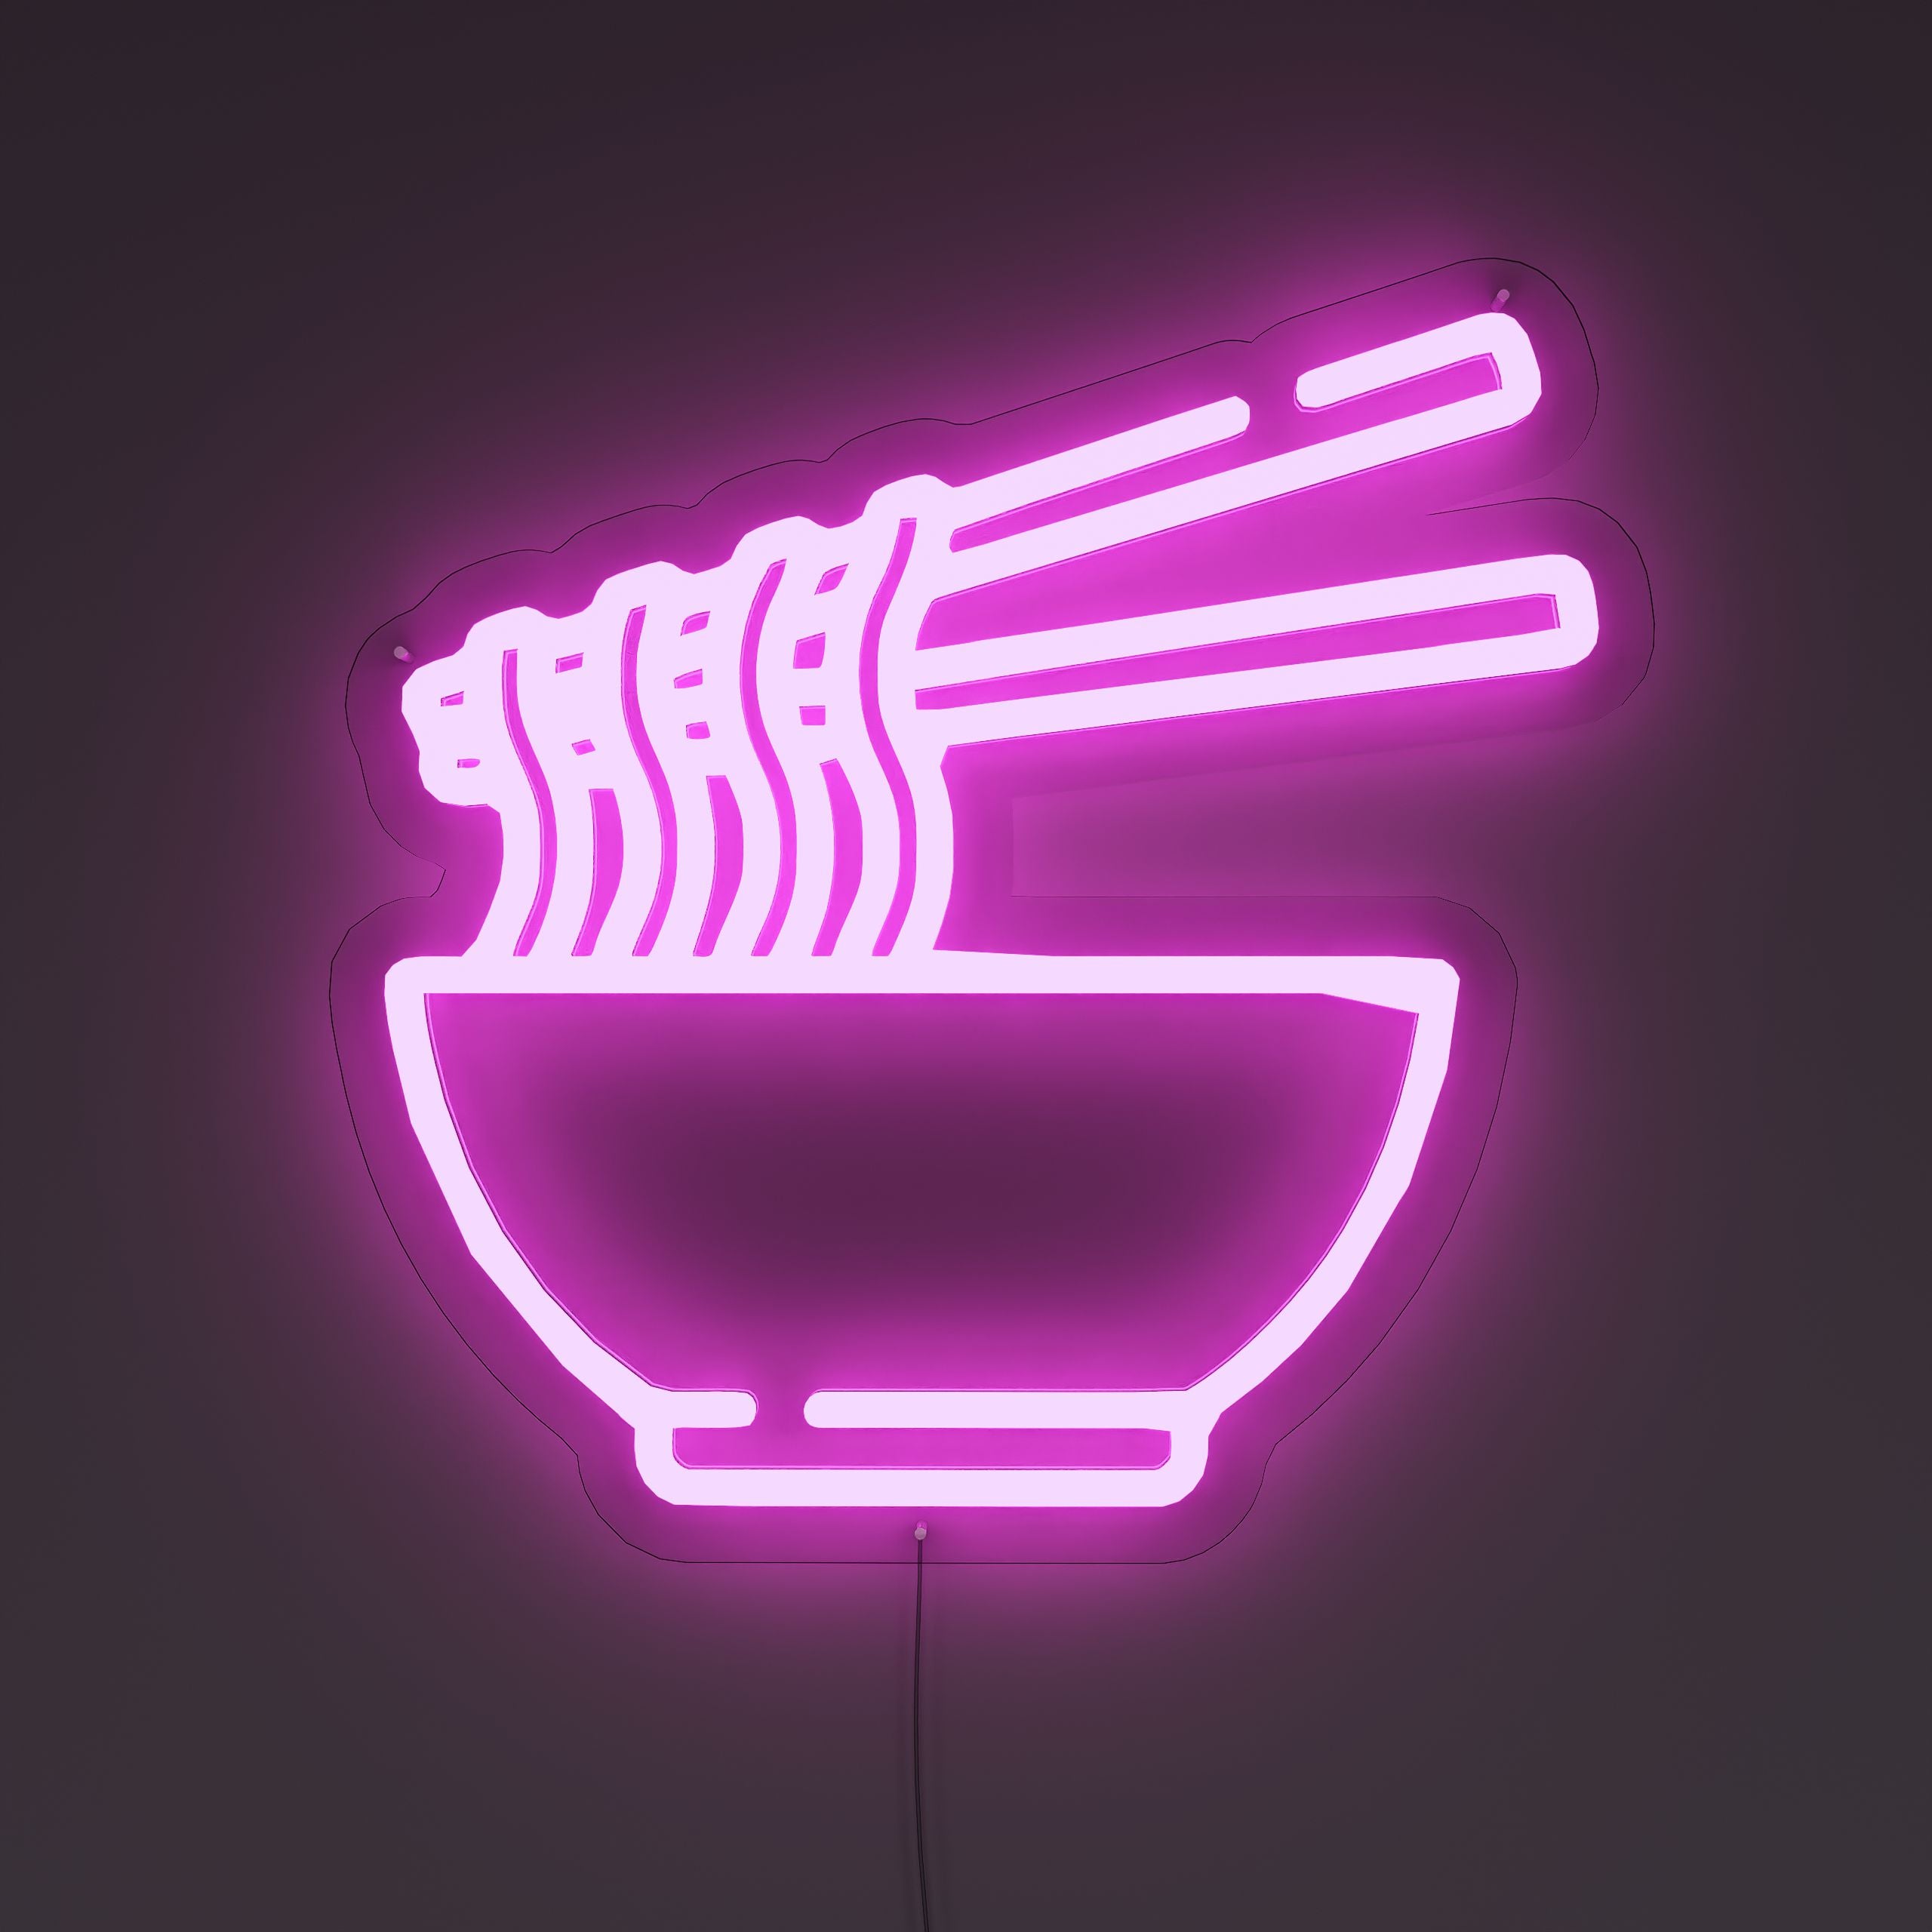 Delicious-Noodles-Neon-Sign-Lite